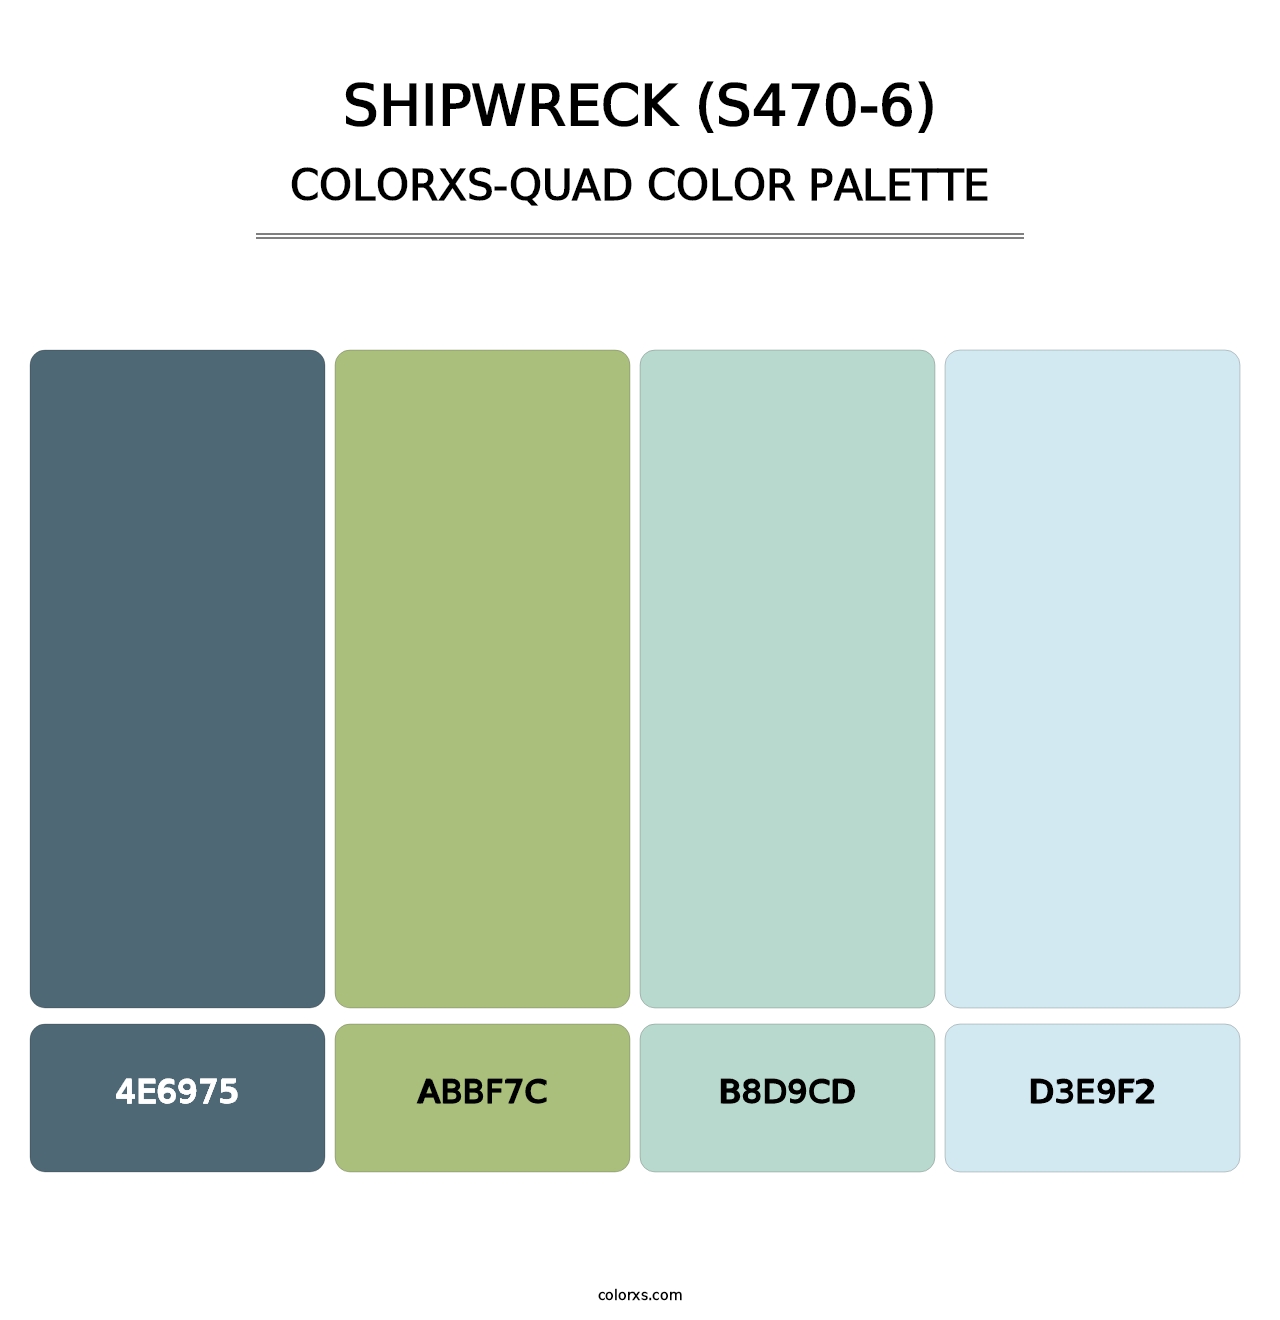 Shipwreck (S470-6) - Colorxs Quad Palette